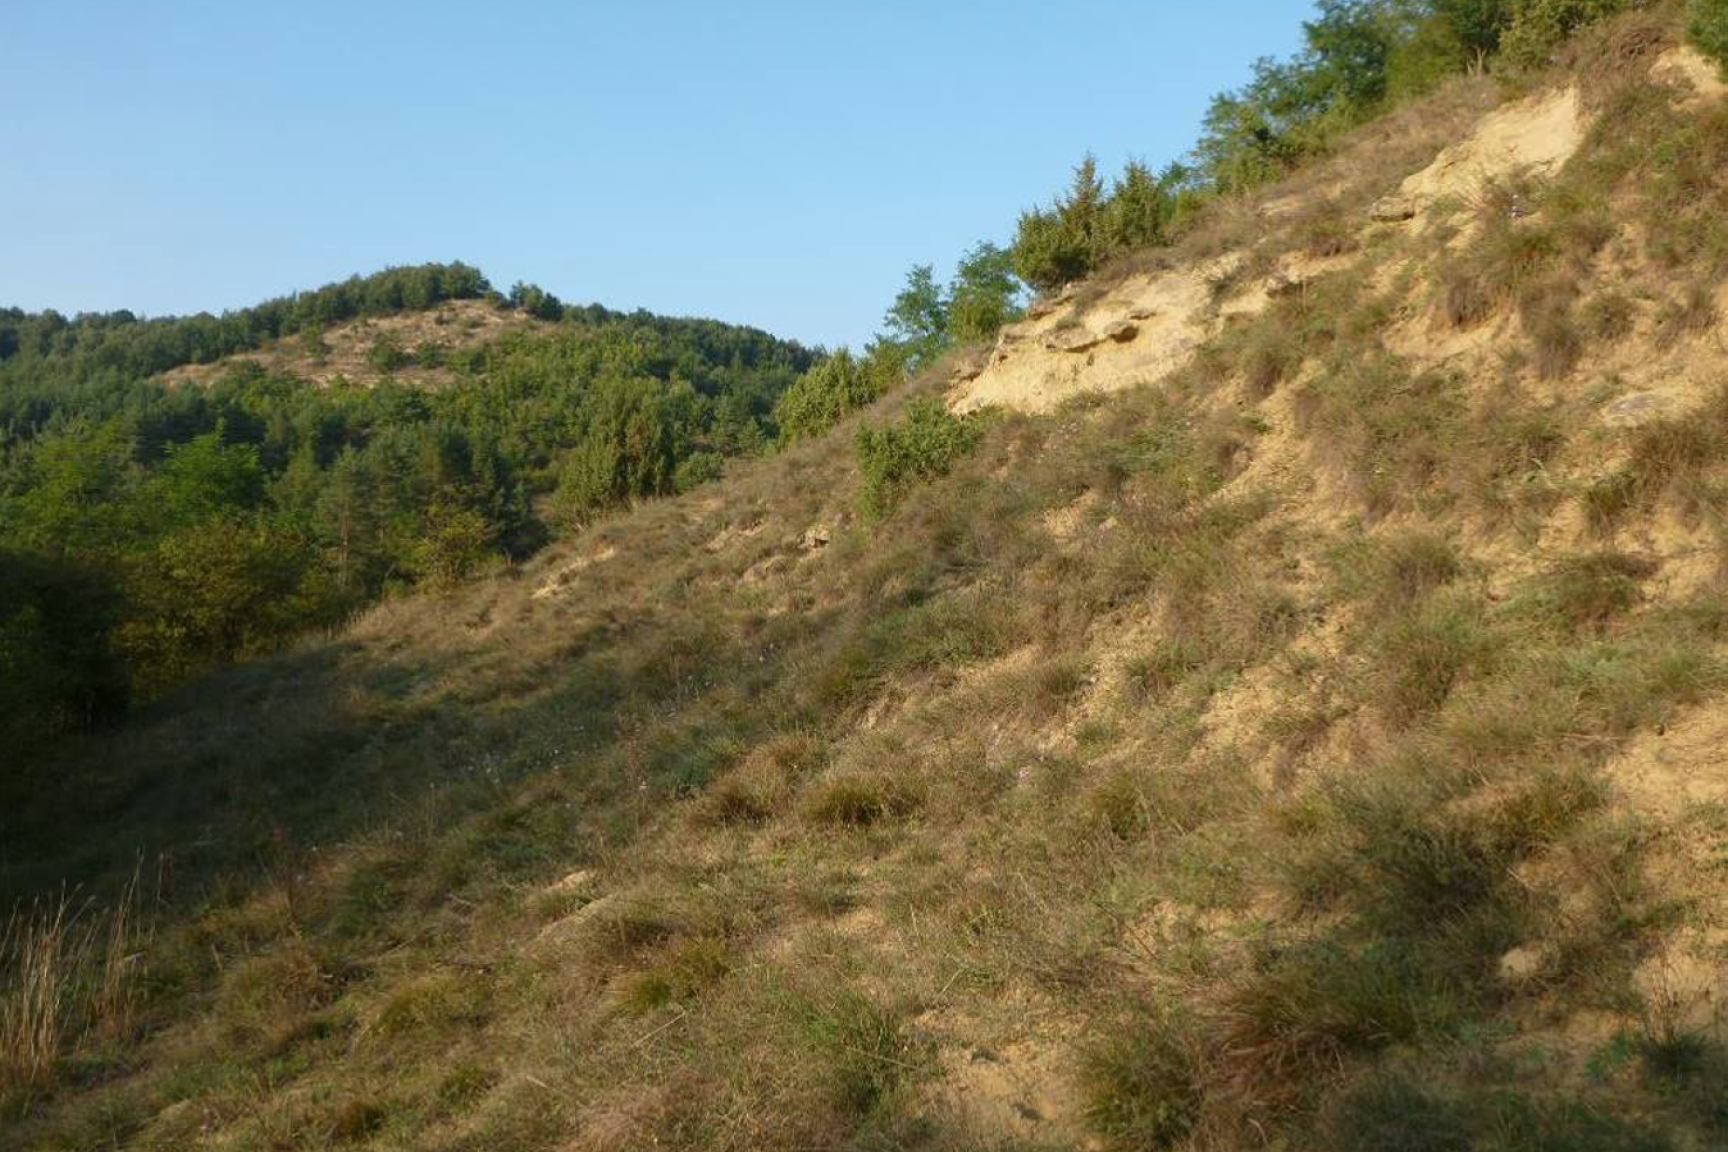 Sziklagyep és sztyepprét mozaikja a Farkas-hegy déli lejtőjén (KE-1)